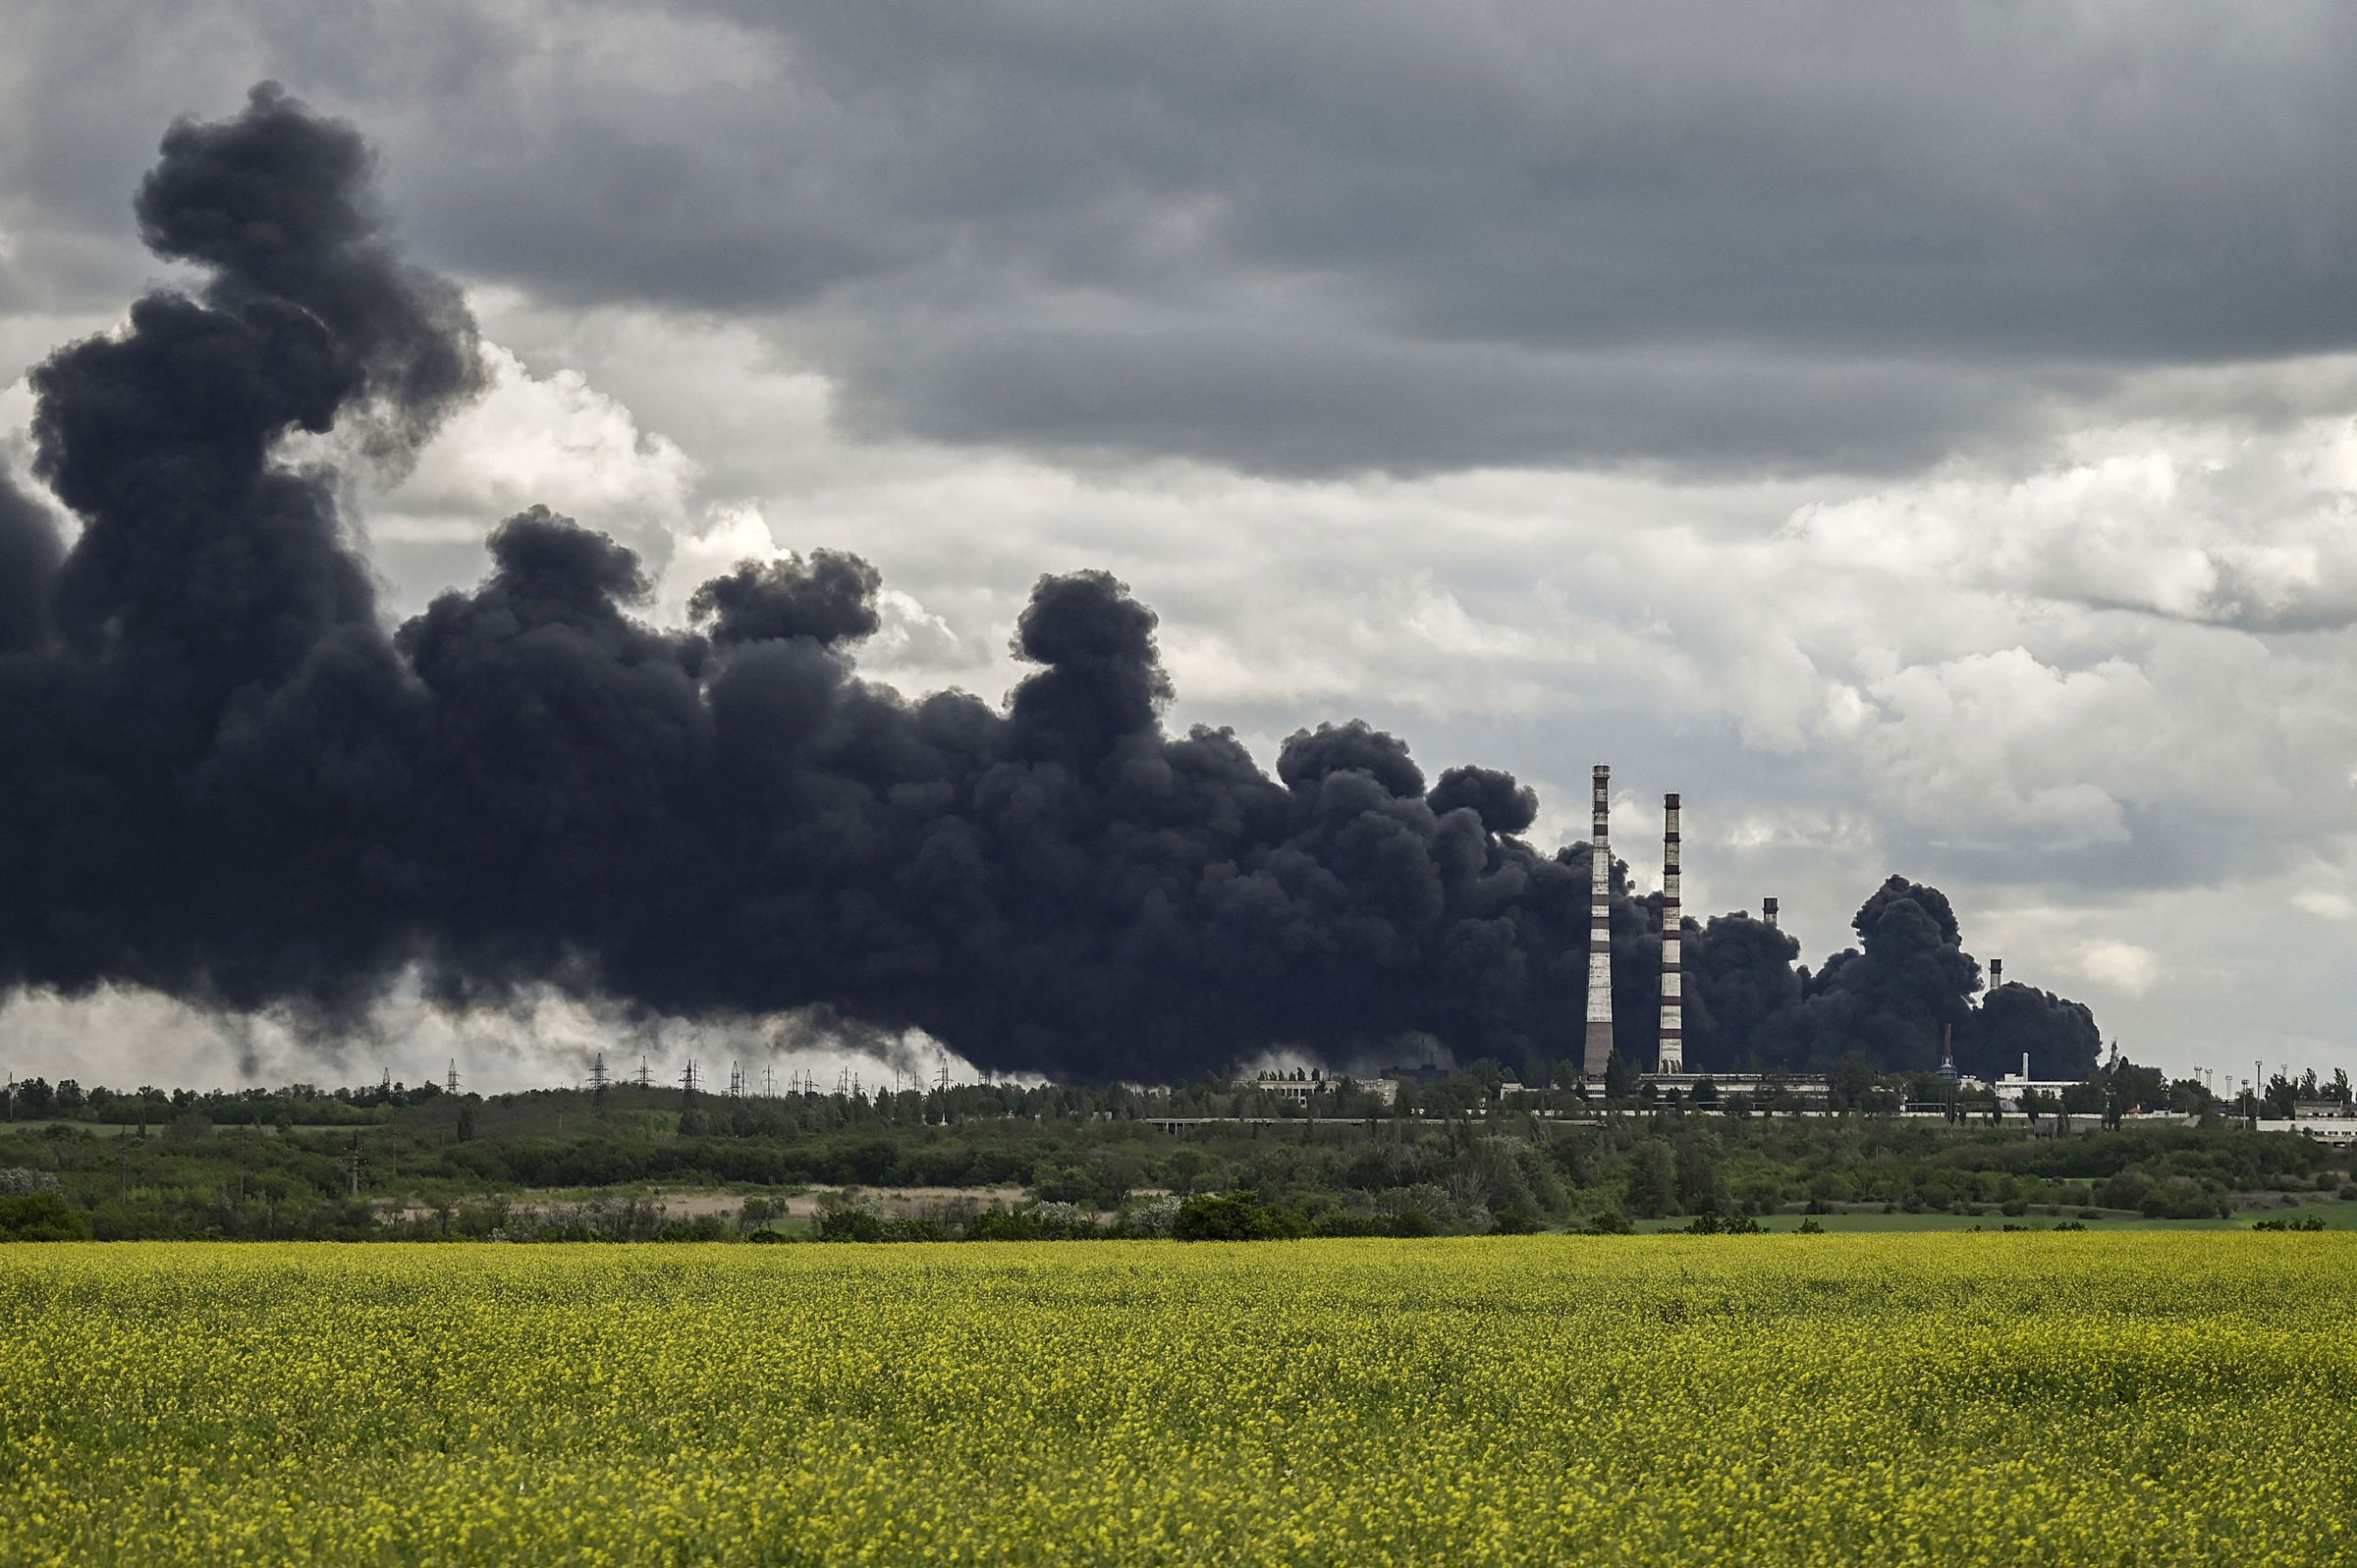 War escalates environmental problems in Ukraine